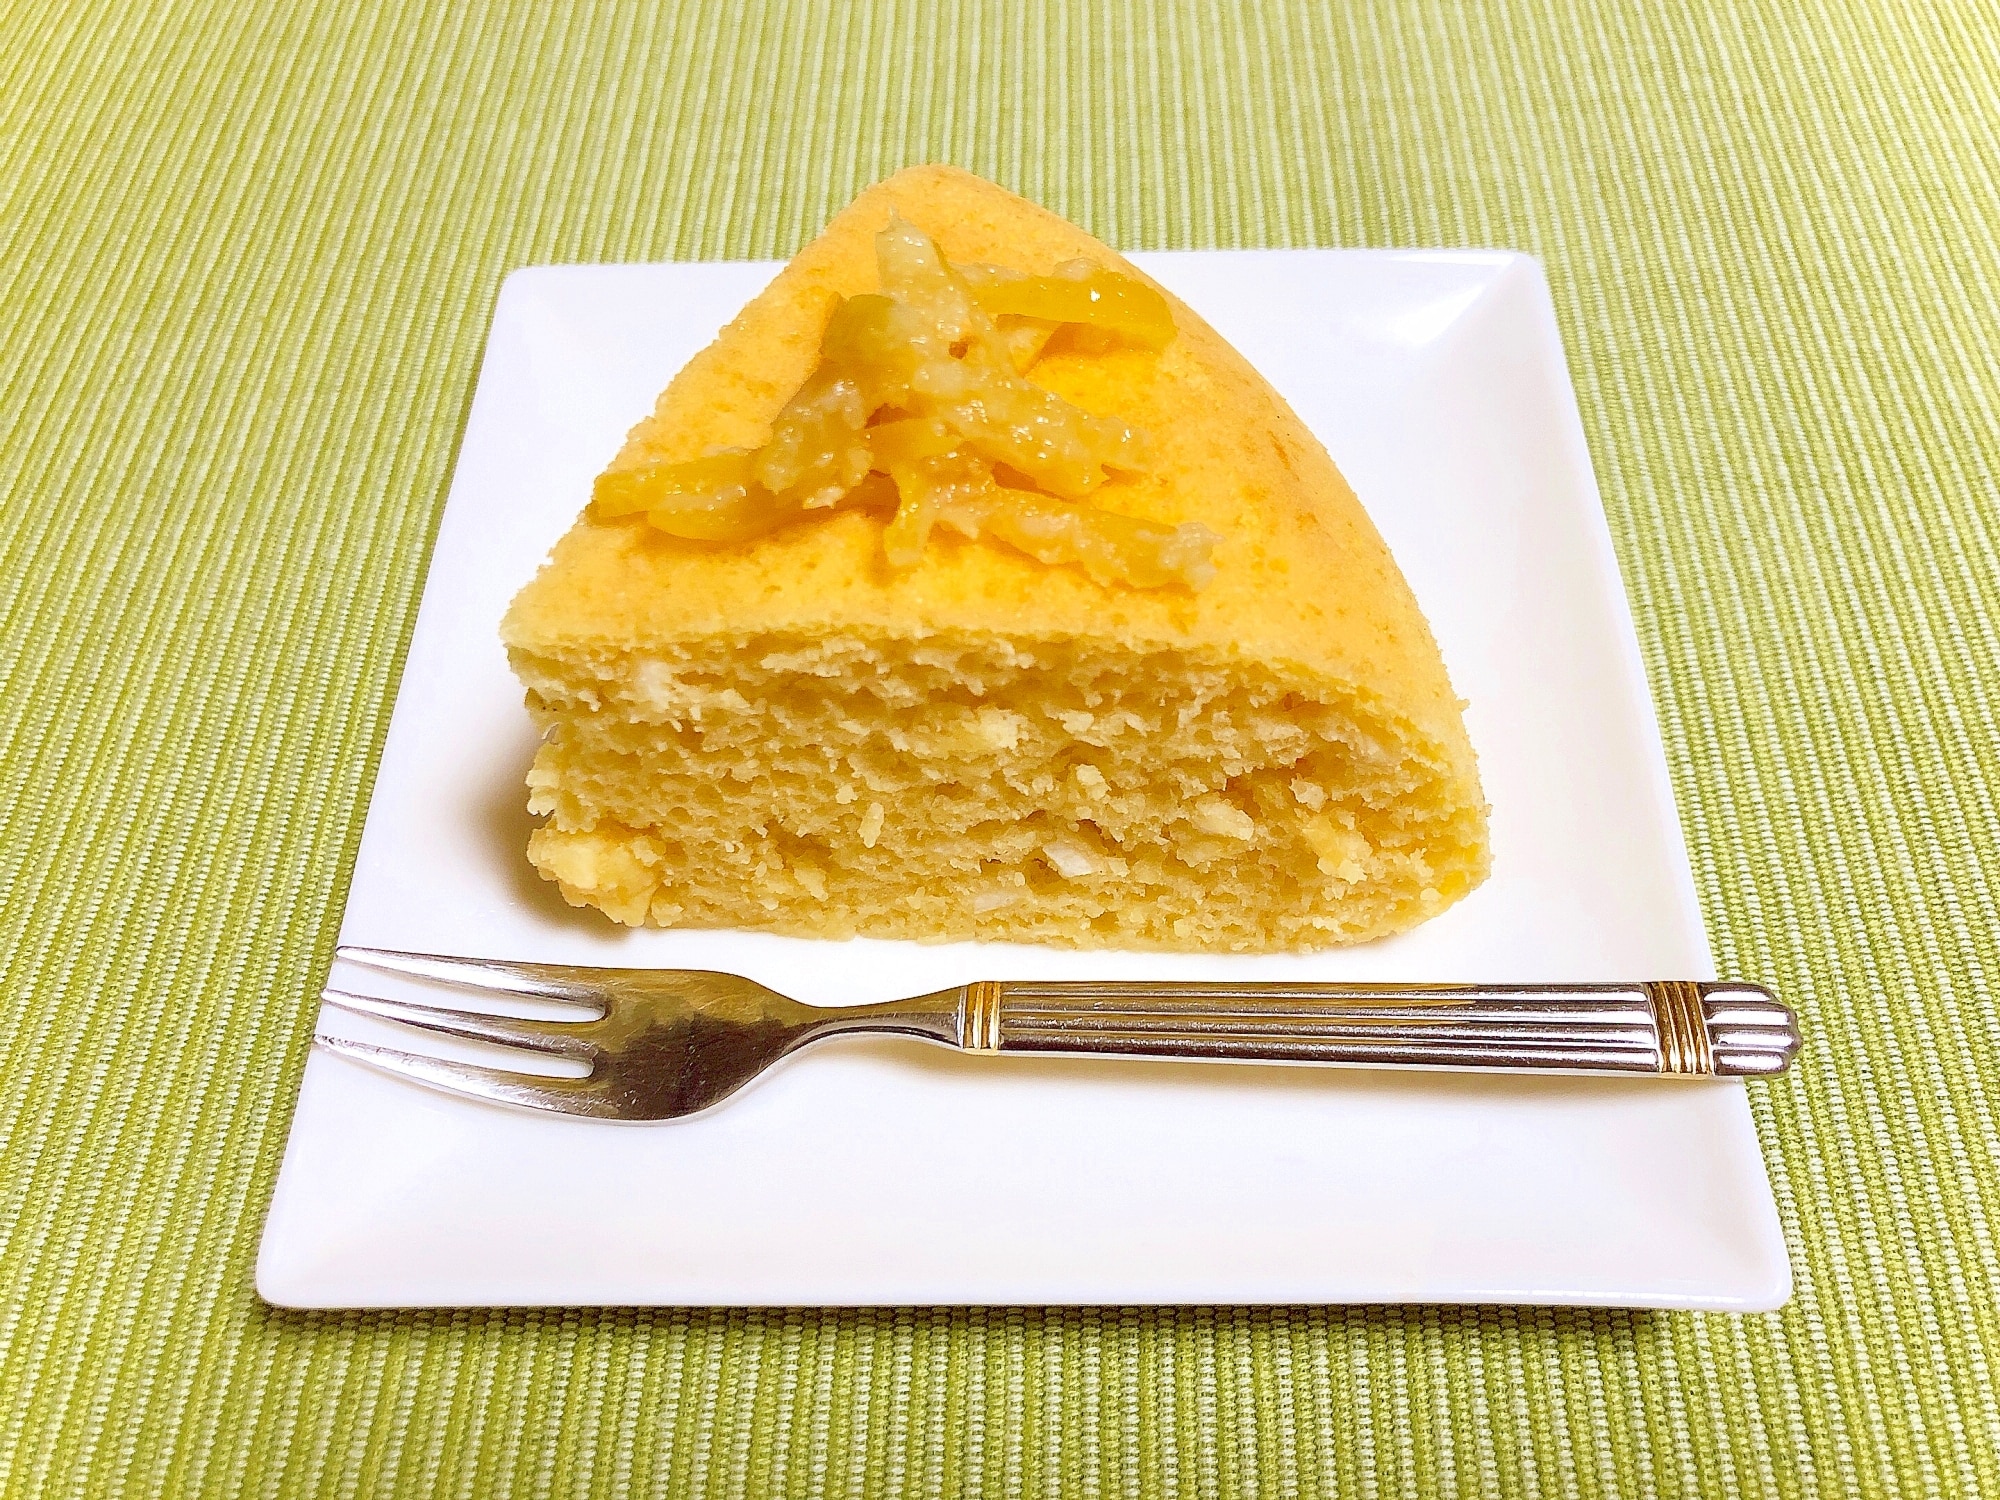 炊飯器で作る 簡単お菓子 しっとり柑橘系のケーキ レシピ 作り方 By M H 楽天レシピ